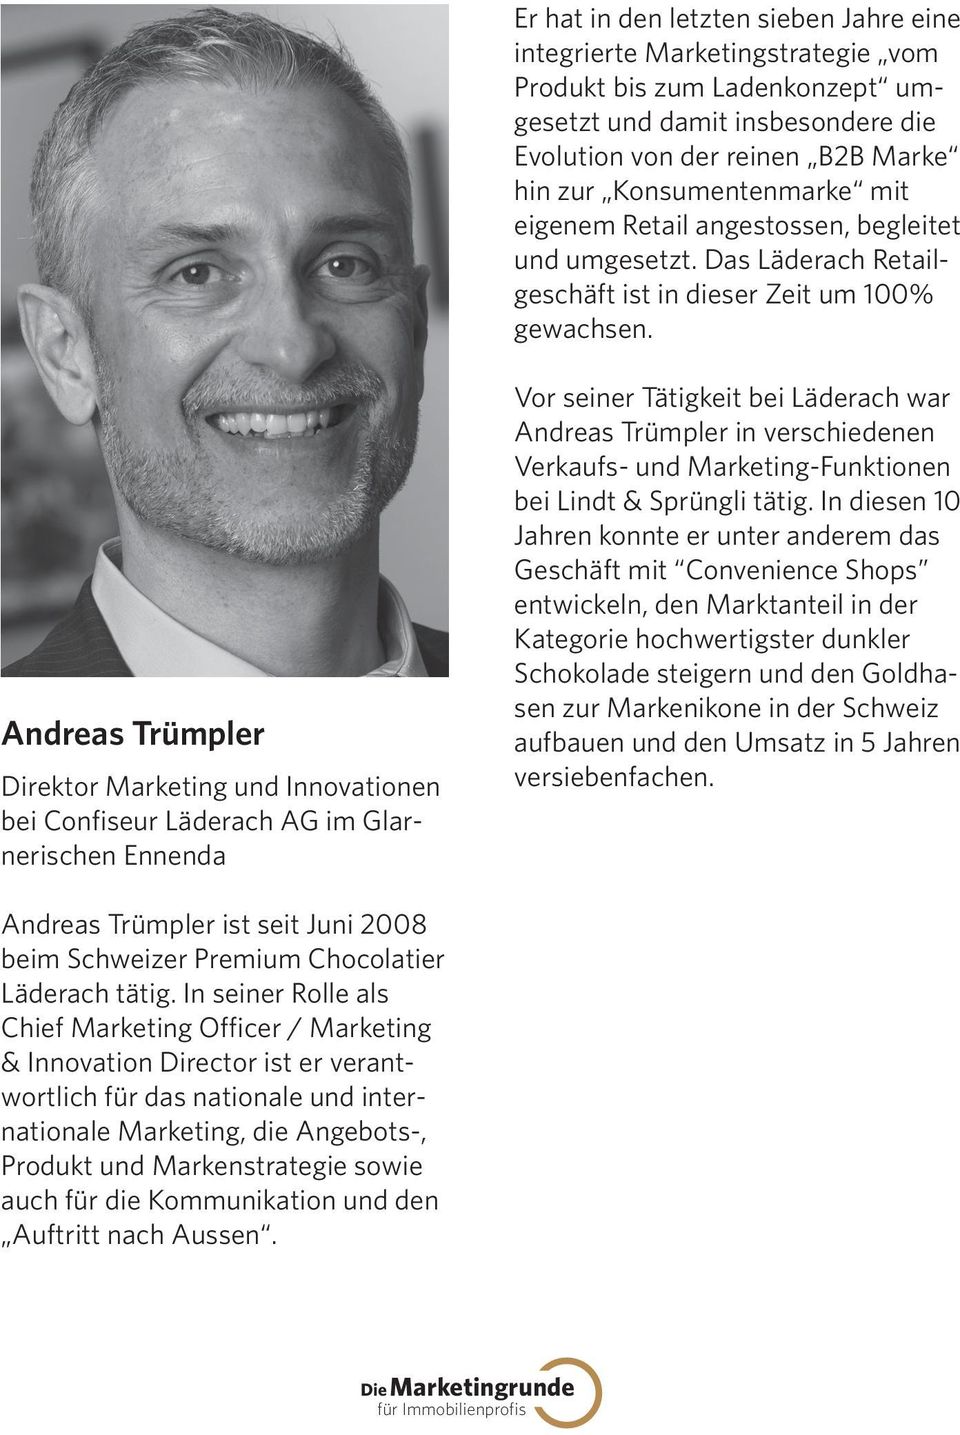 Andreas Trümpler Direktor Marketing und Innovationen bei Confiseur Läderach AG im Glarnerischen Ennenda Vor seiner Tätigkeit bei Läderach war Andreas Trümpler in verschiedenen Verkaufs- und